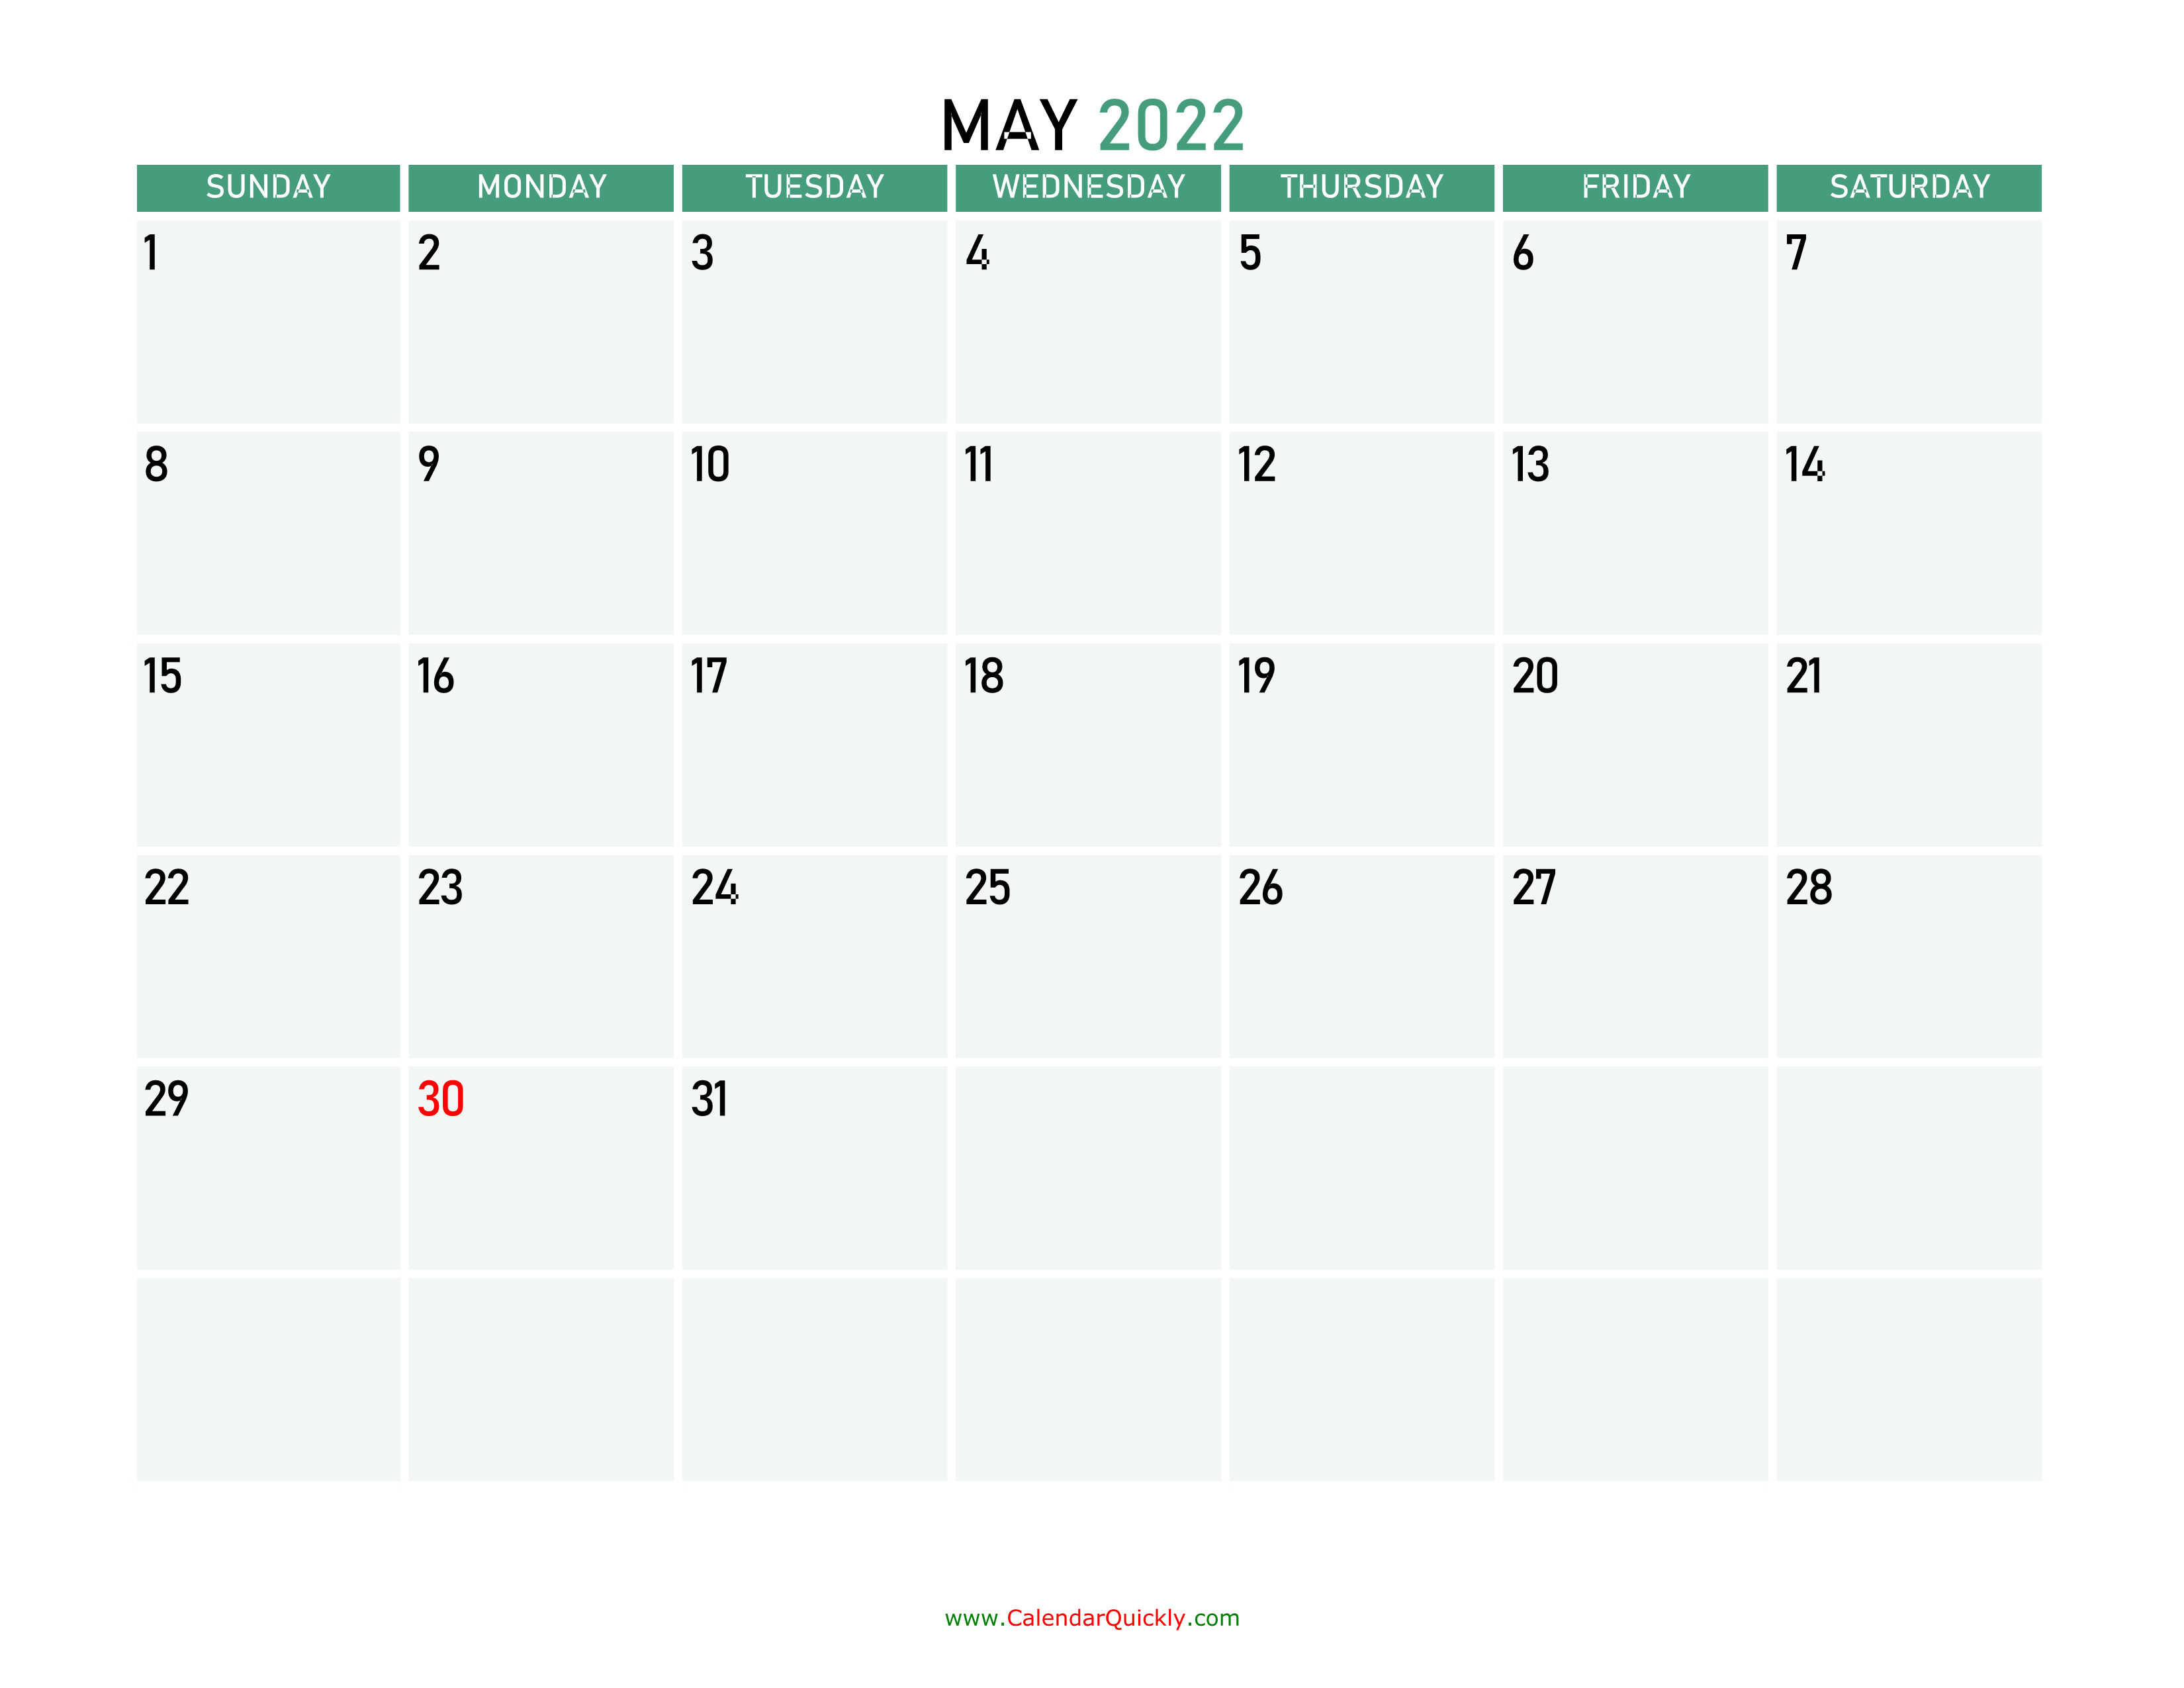 may-2022-printable-calendar-calendar-quickly